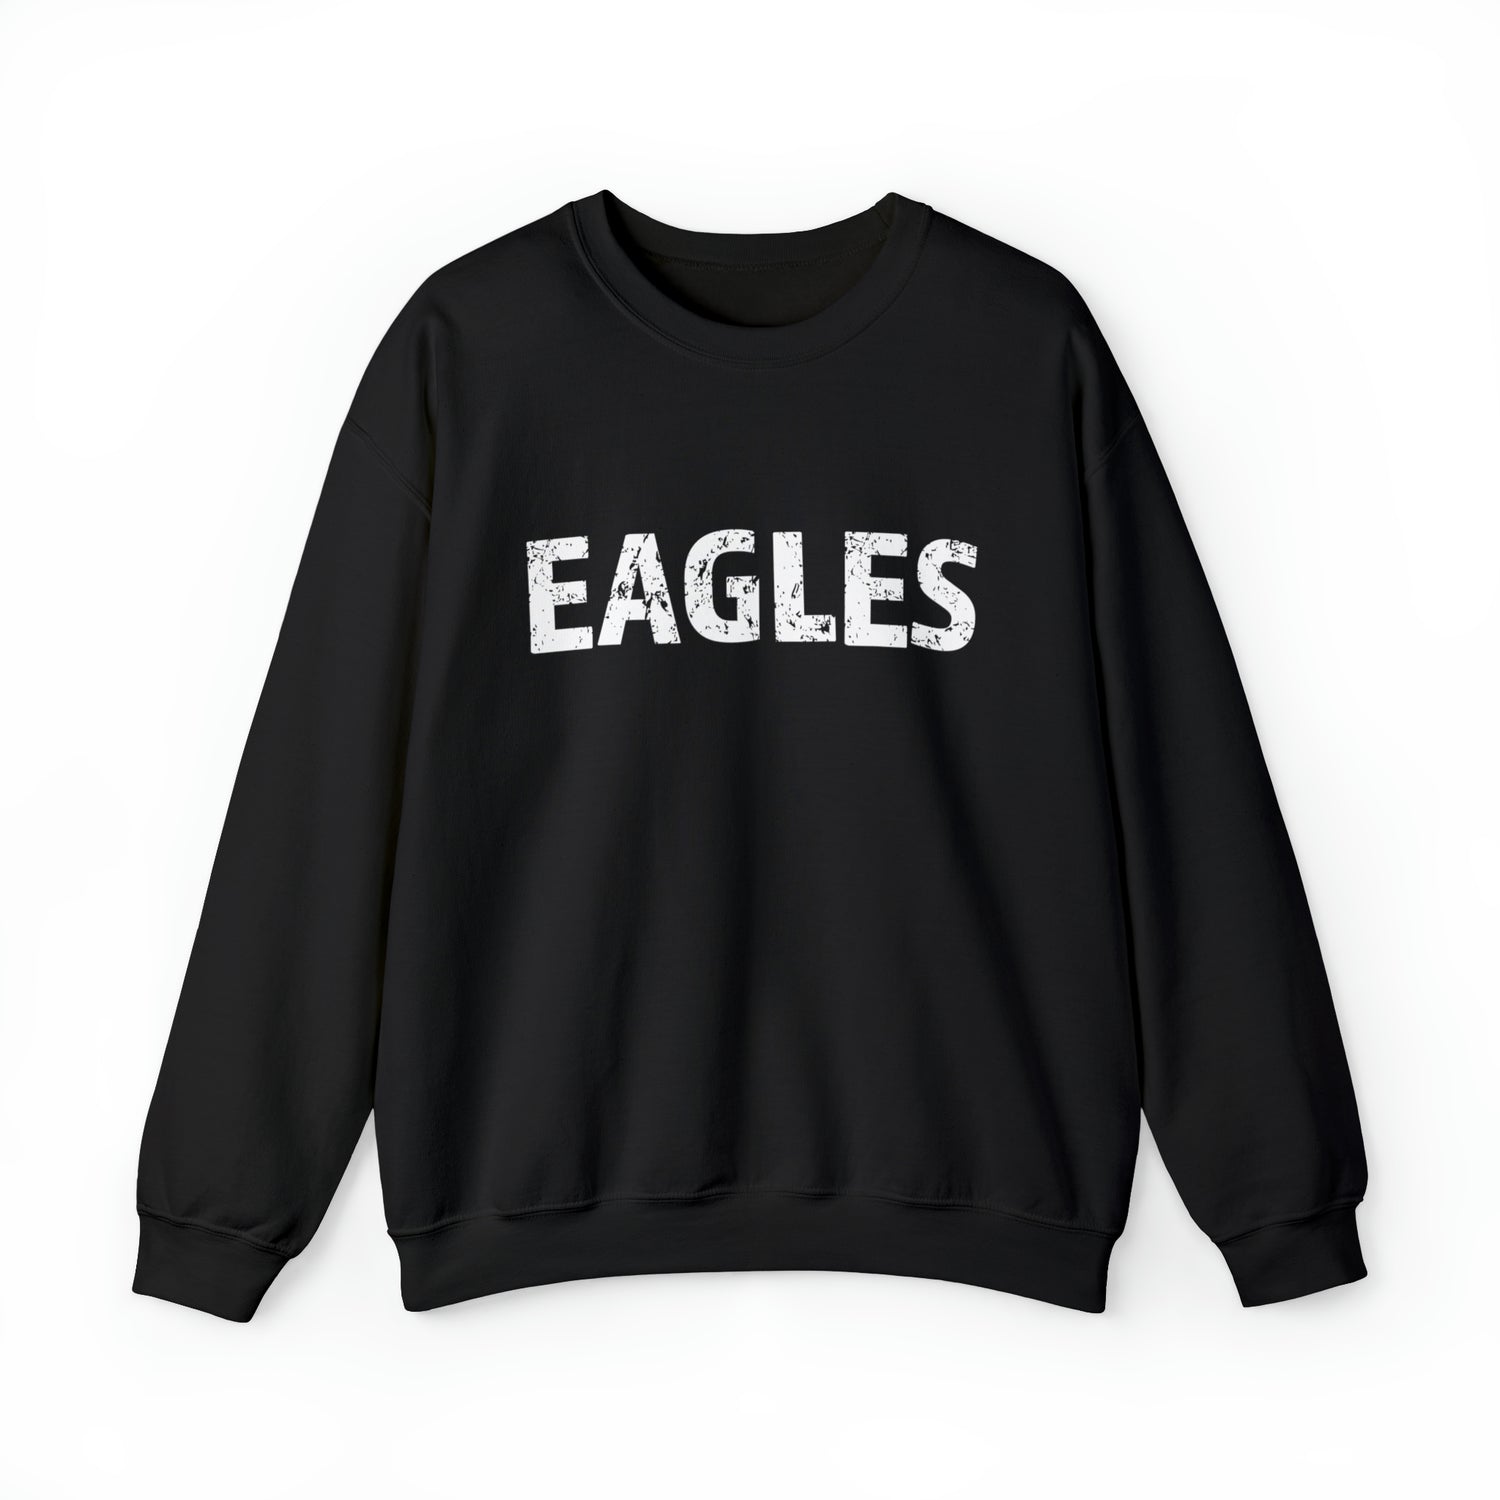 Old School Green Philadelphia Eagles Crew Neck Sweatshirt - Home Field Fan